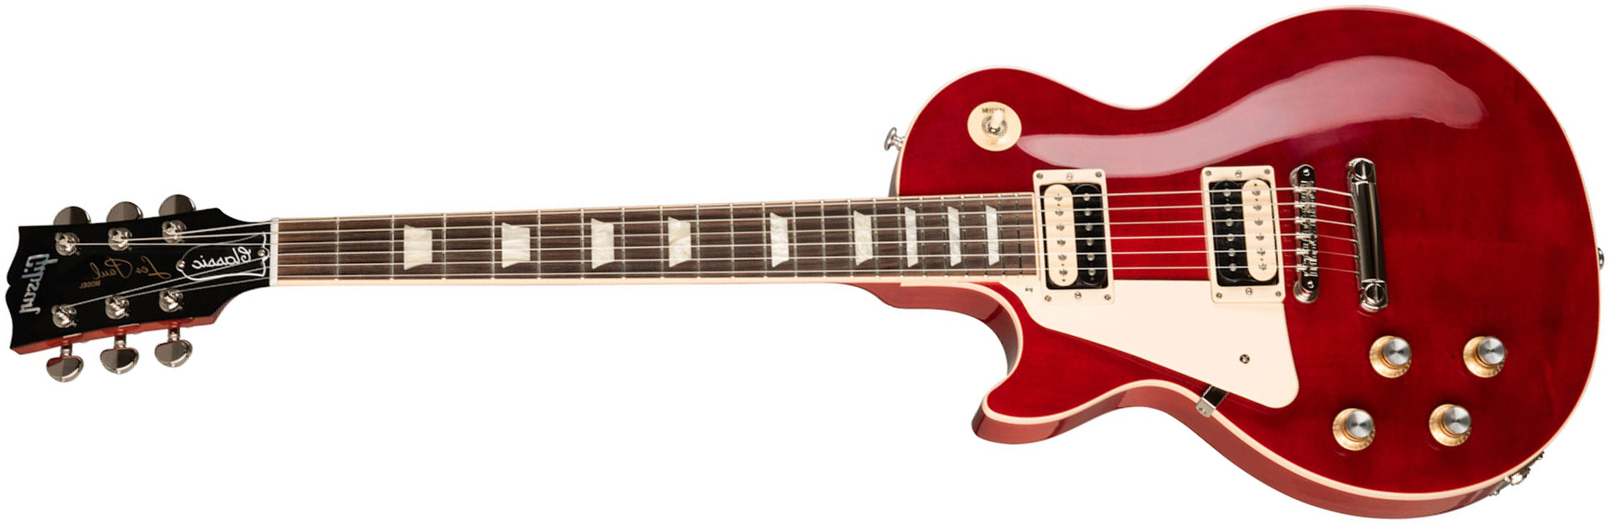 Gibson Les Paul Classic Lh Modern Gaucher 2h Ht Rw - Trans Cherry - Linkshandige elektrische gitaar - Main picture